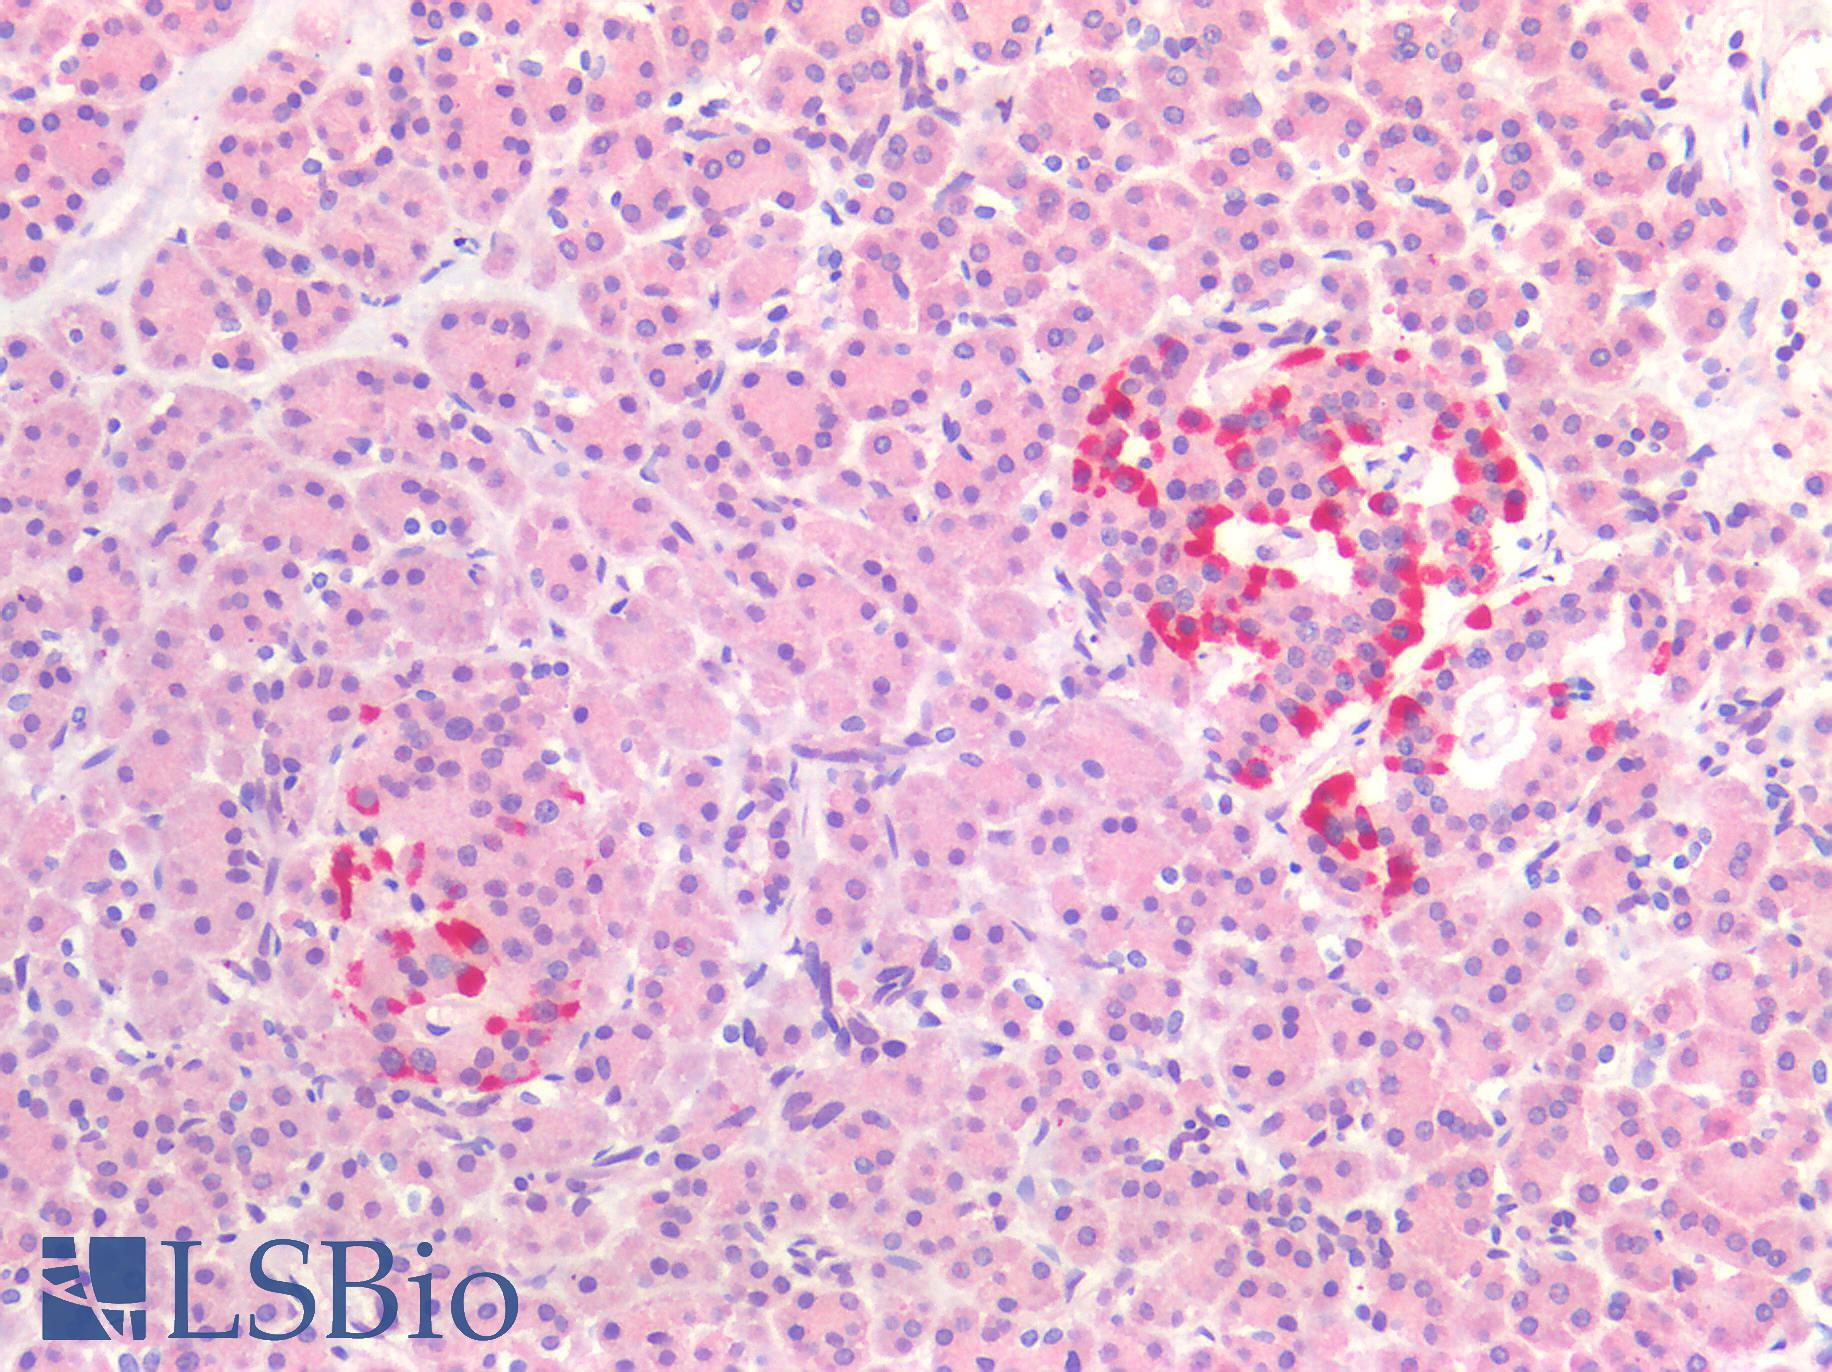 MAPT / Tau Antibody - Human Pancreas: Formalin-Fixed, Paraffin-Embedded (FFPE)